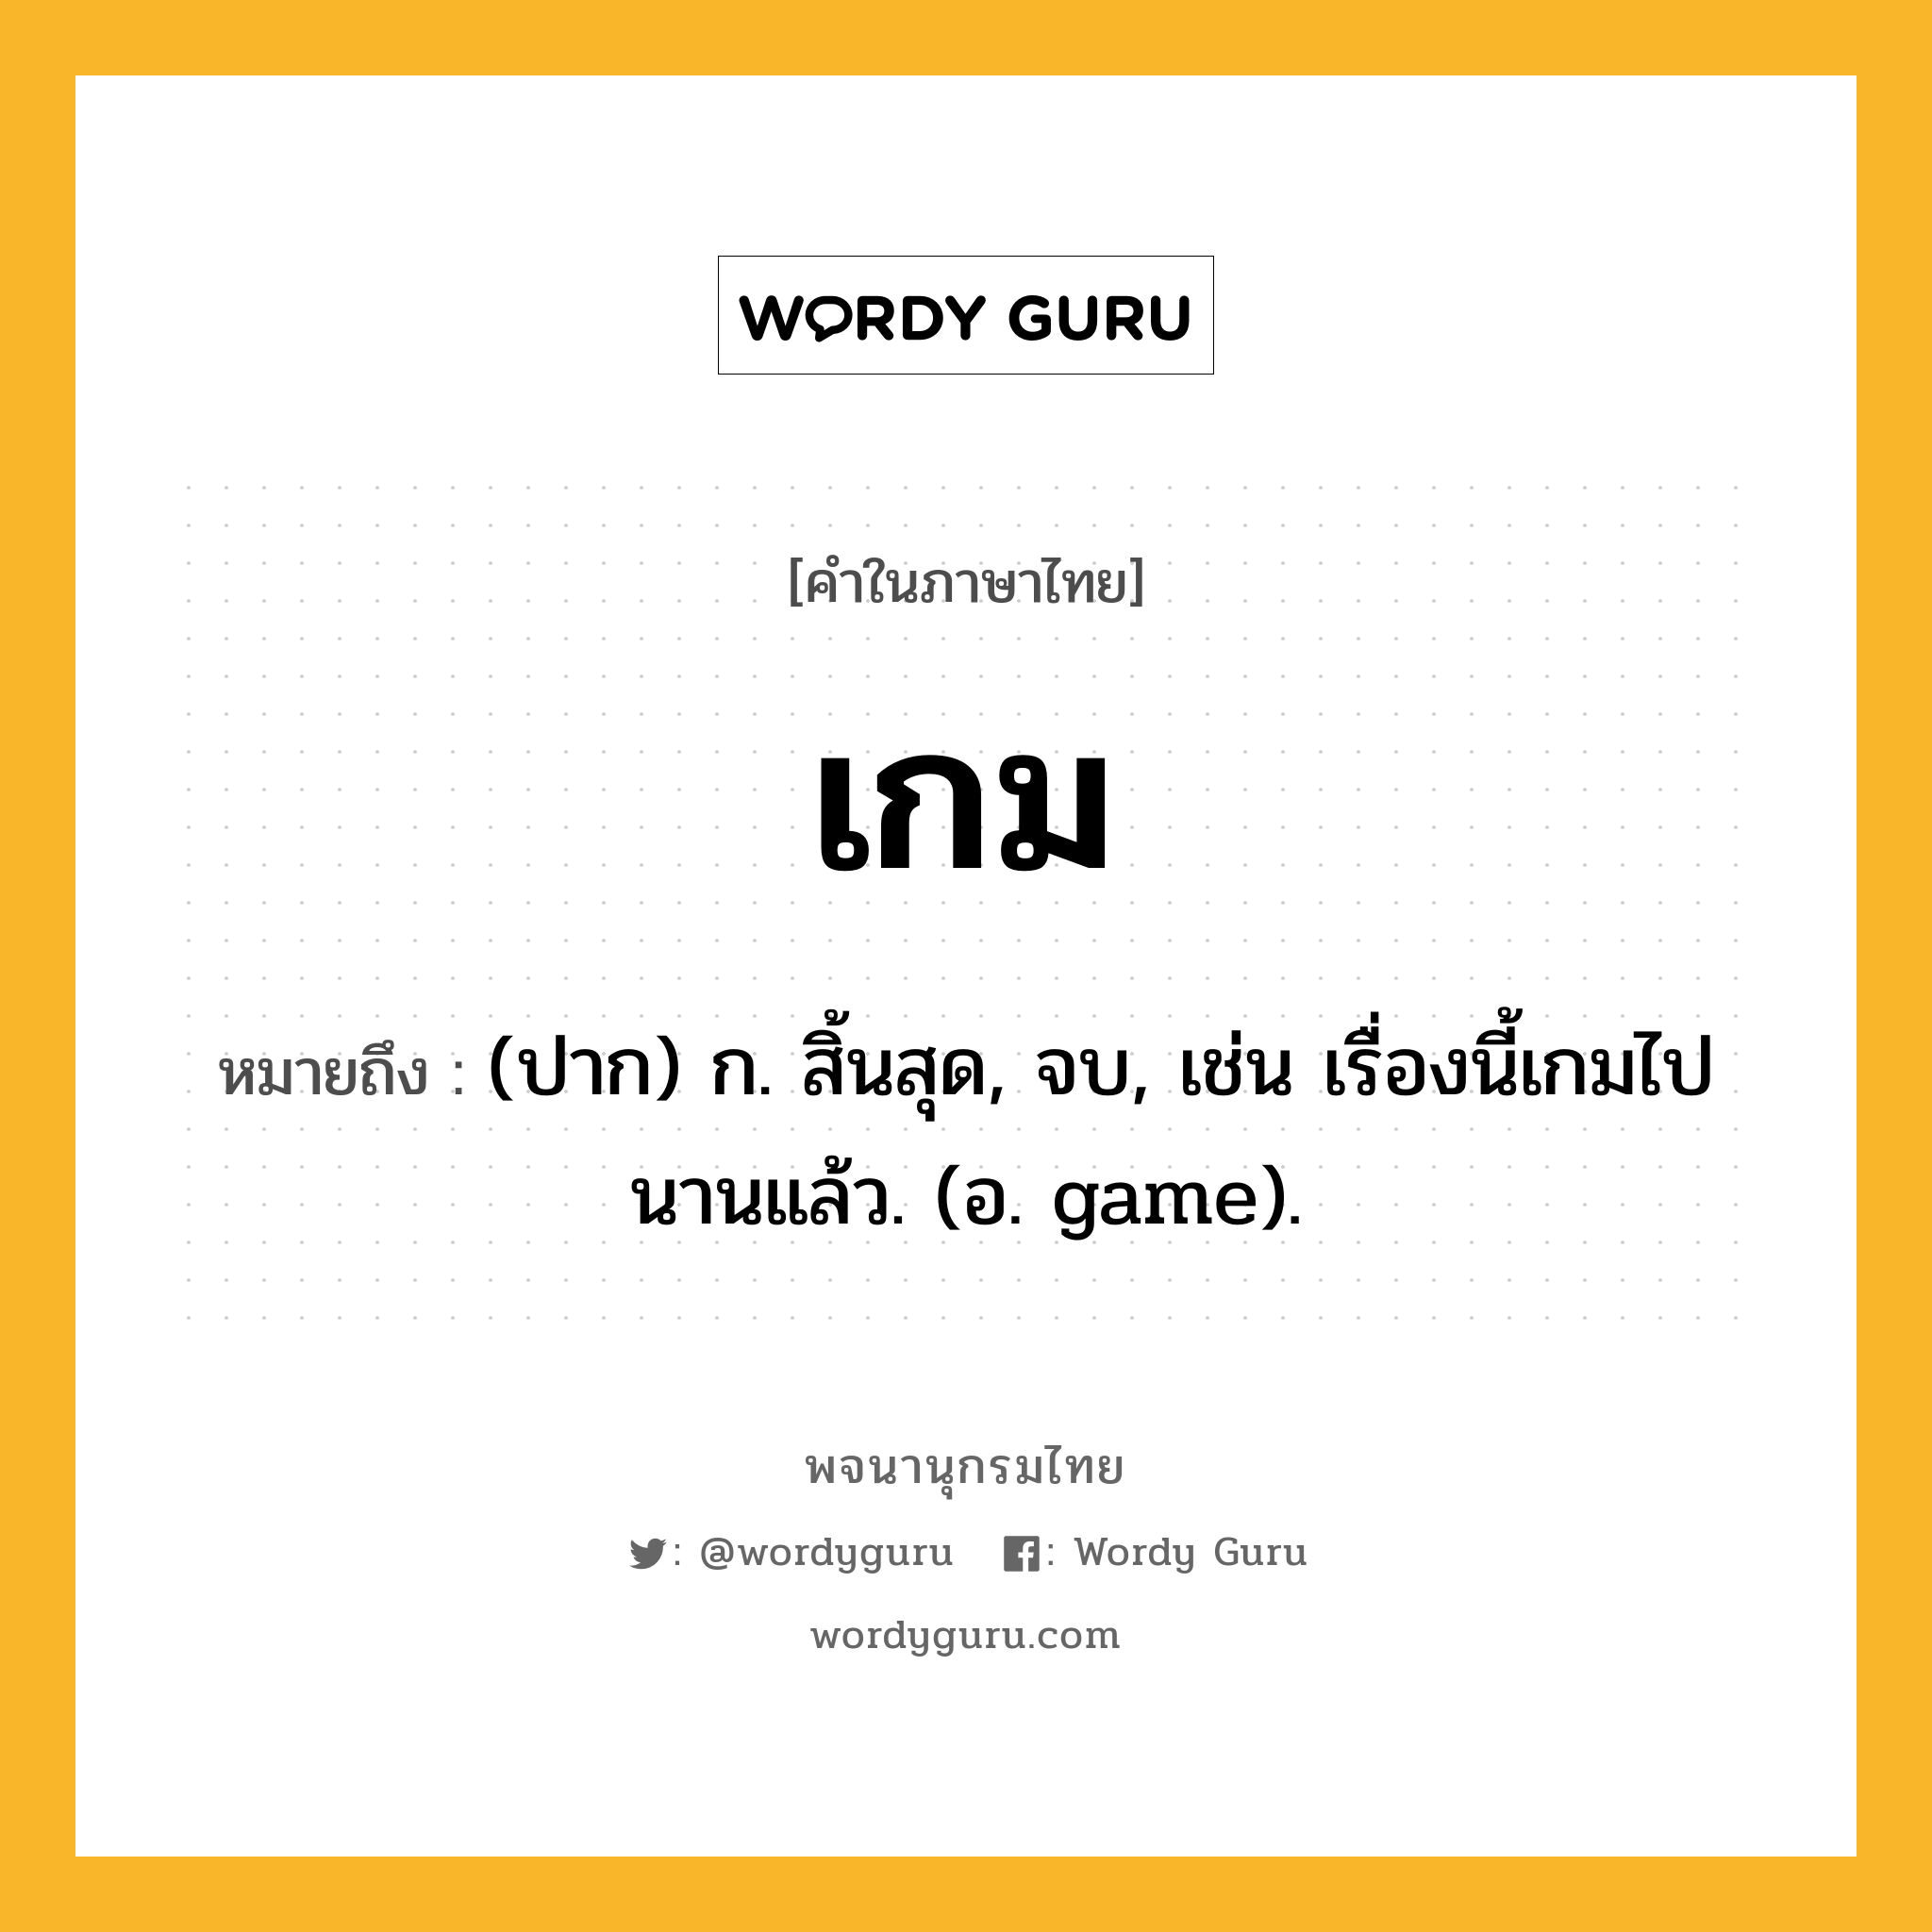 เกม หมายถึงอะไร?, คำในภาษาไทย เกม หมายถึง (ปาก) ก. สิ้นสุด, จบ, เช่น เรื่องนี้เกมไปนานแล้ว. (อ. game).